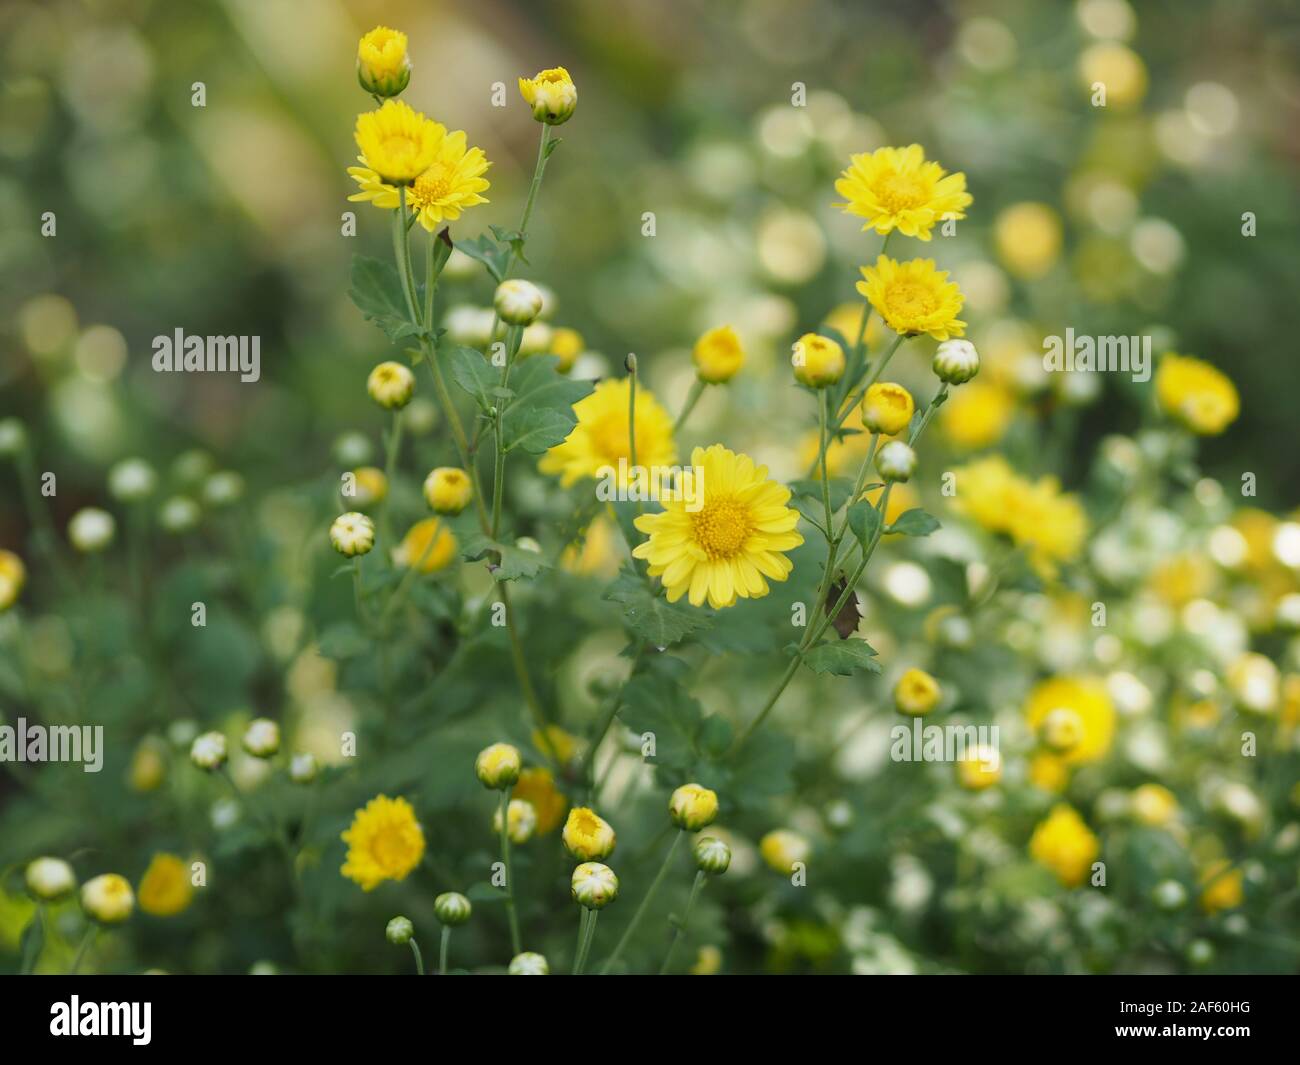 Chrysanthemum yellow flower in nature blurred of background Scientific name Chrysanthemum morifolium Ramat Stock Photo